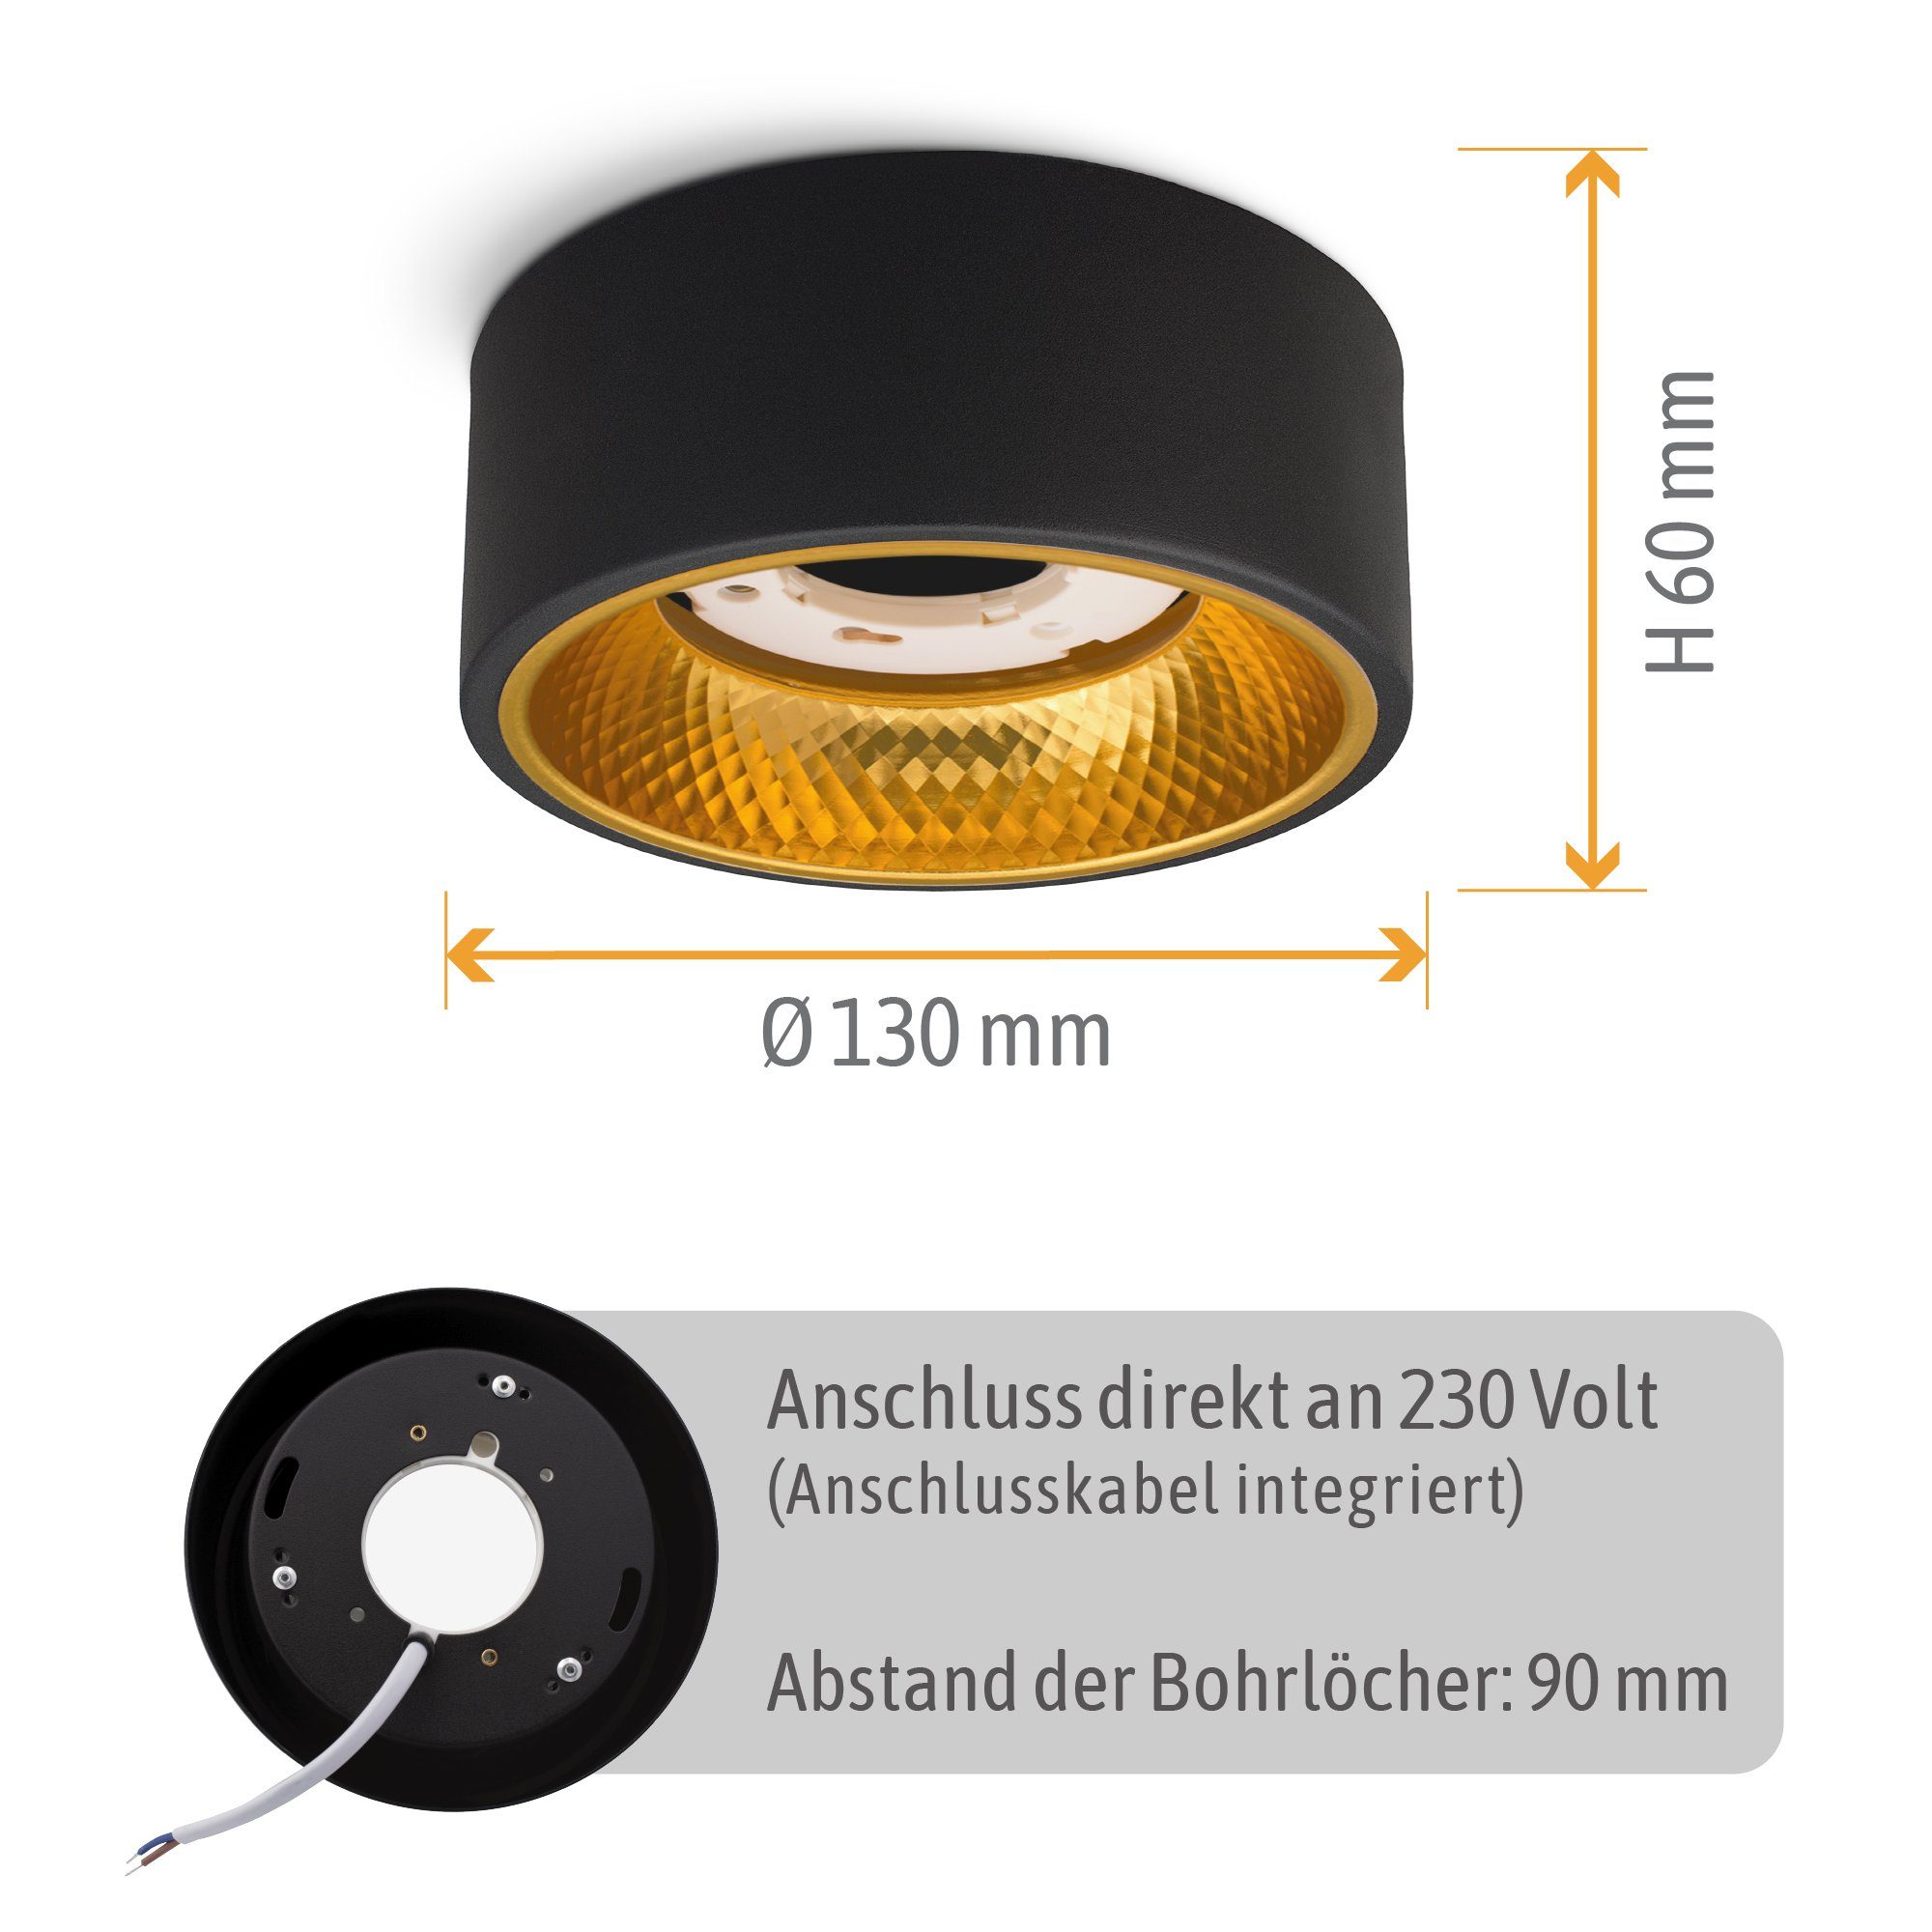 Deckenlampe Aufbauleuchte Spot warmweiß OLINO GX53 schwarz Fassung SSC-LUXon Aufbauleuchte